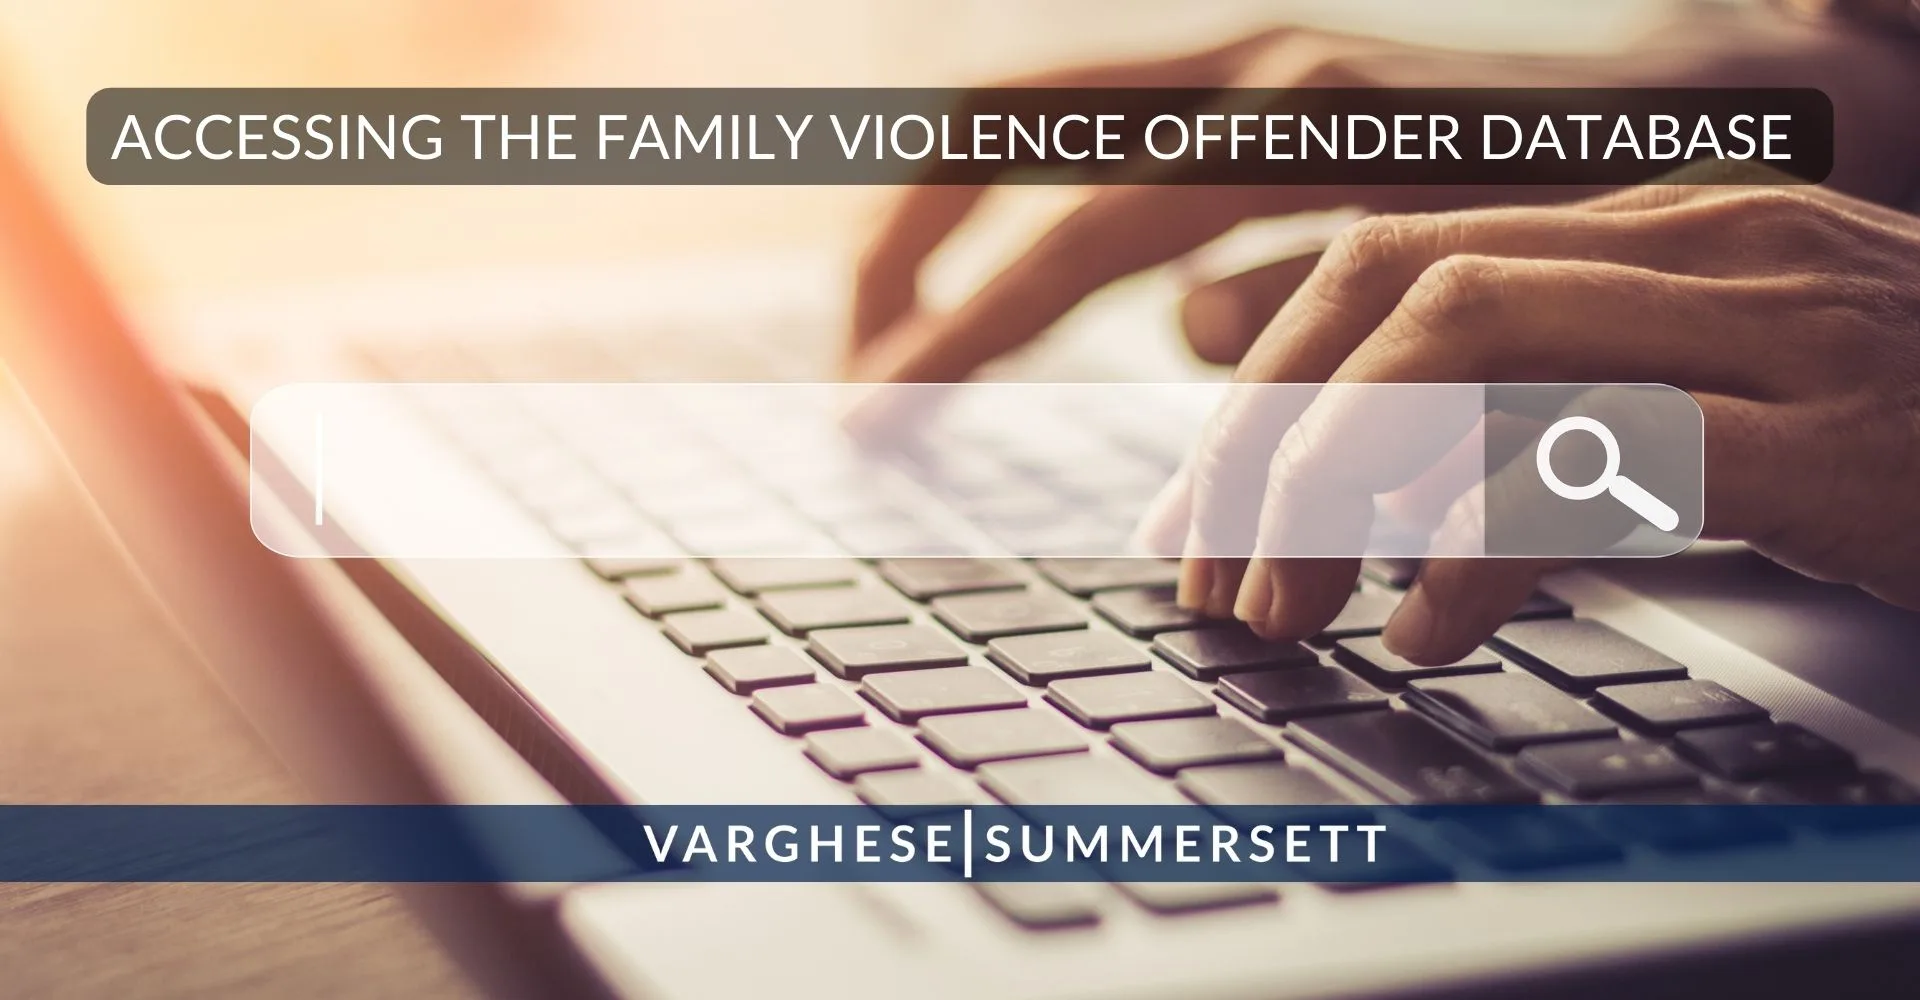 Nueva Ley: Base de datos de agresores de violencia familiar de Texas